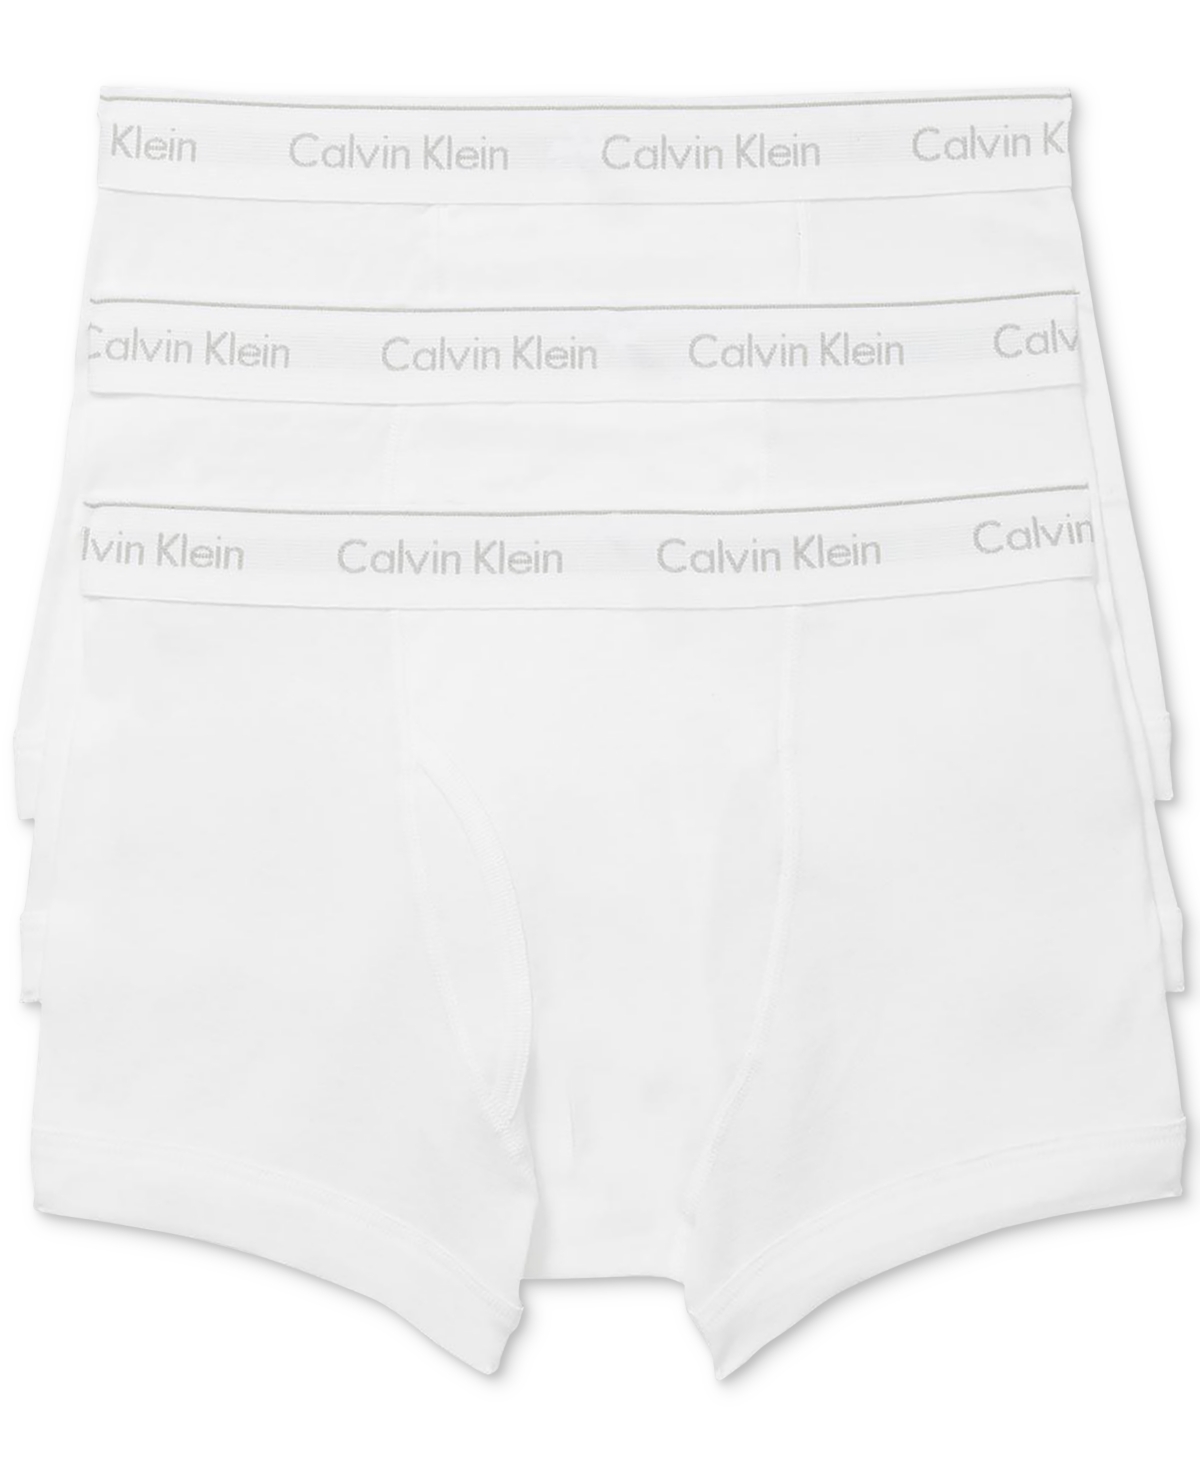 Calvin Klein Men's 3-pk. Classic Cotton Trunks Underwear In White